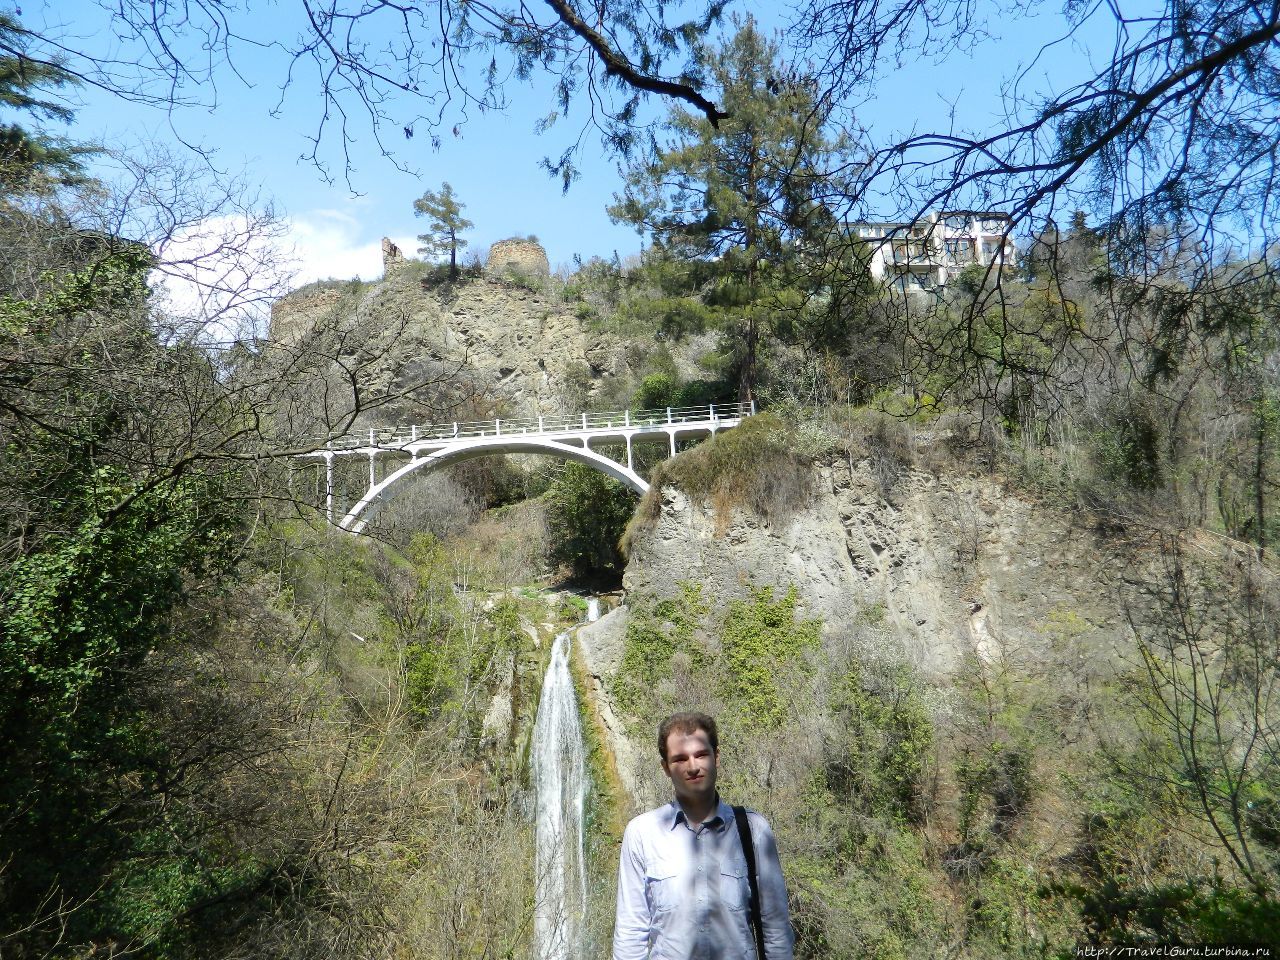 Ботанический сад. Мост Тамары Тбилиси, Грузия